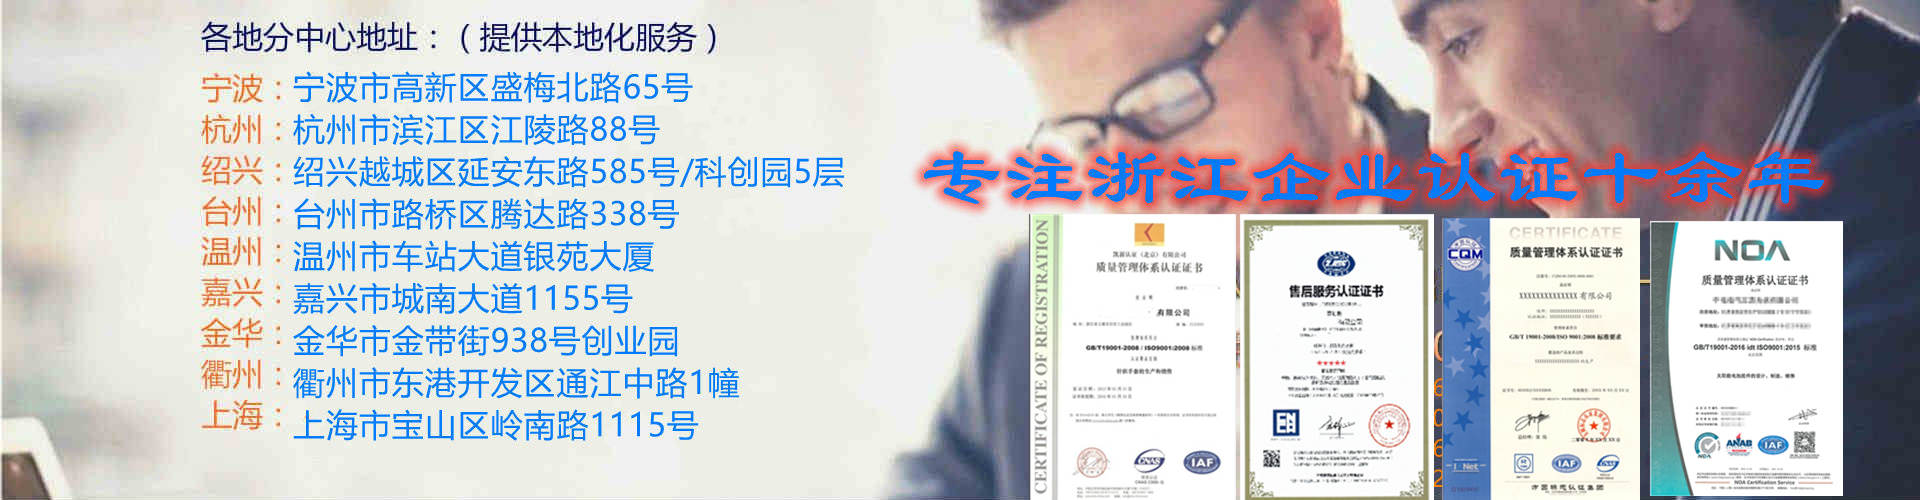 衢州ISO9001质量认证公司 办理流程